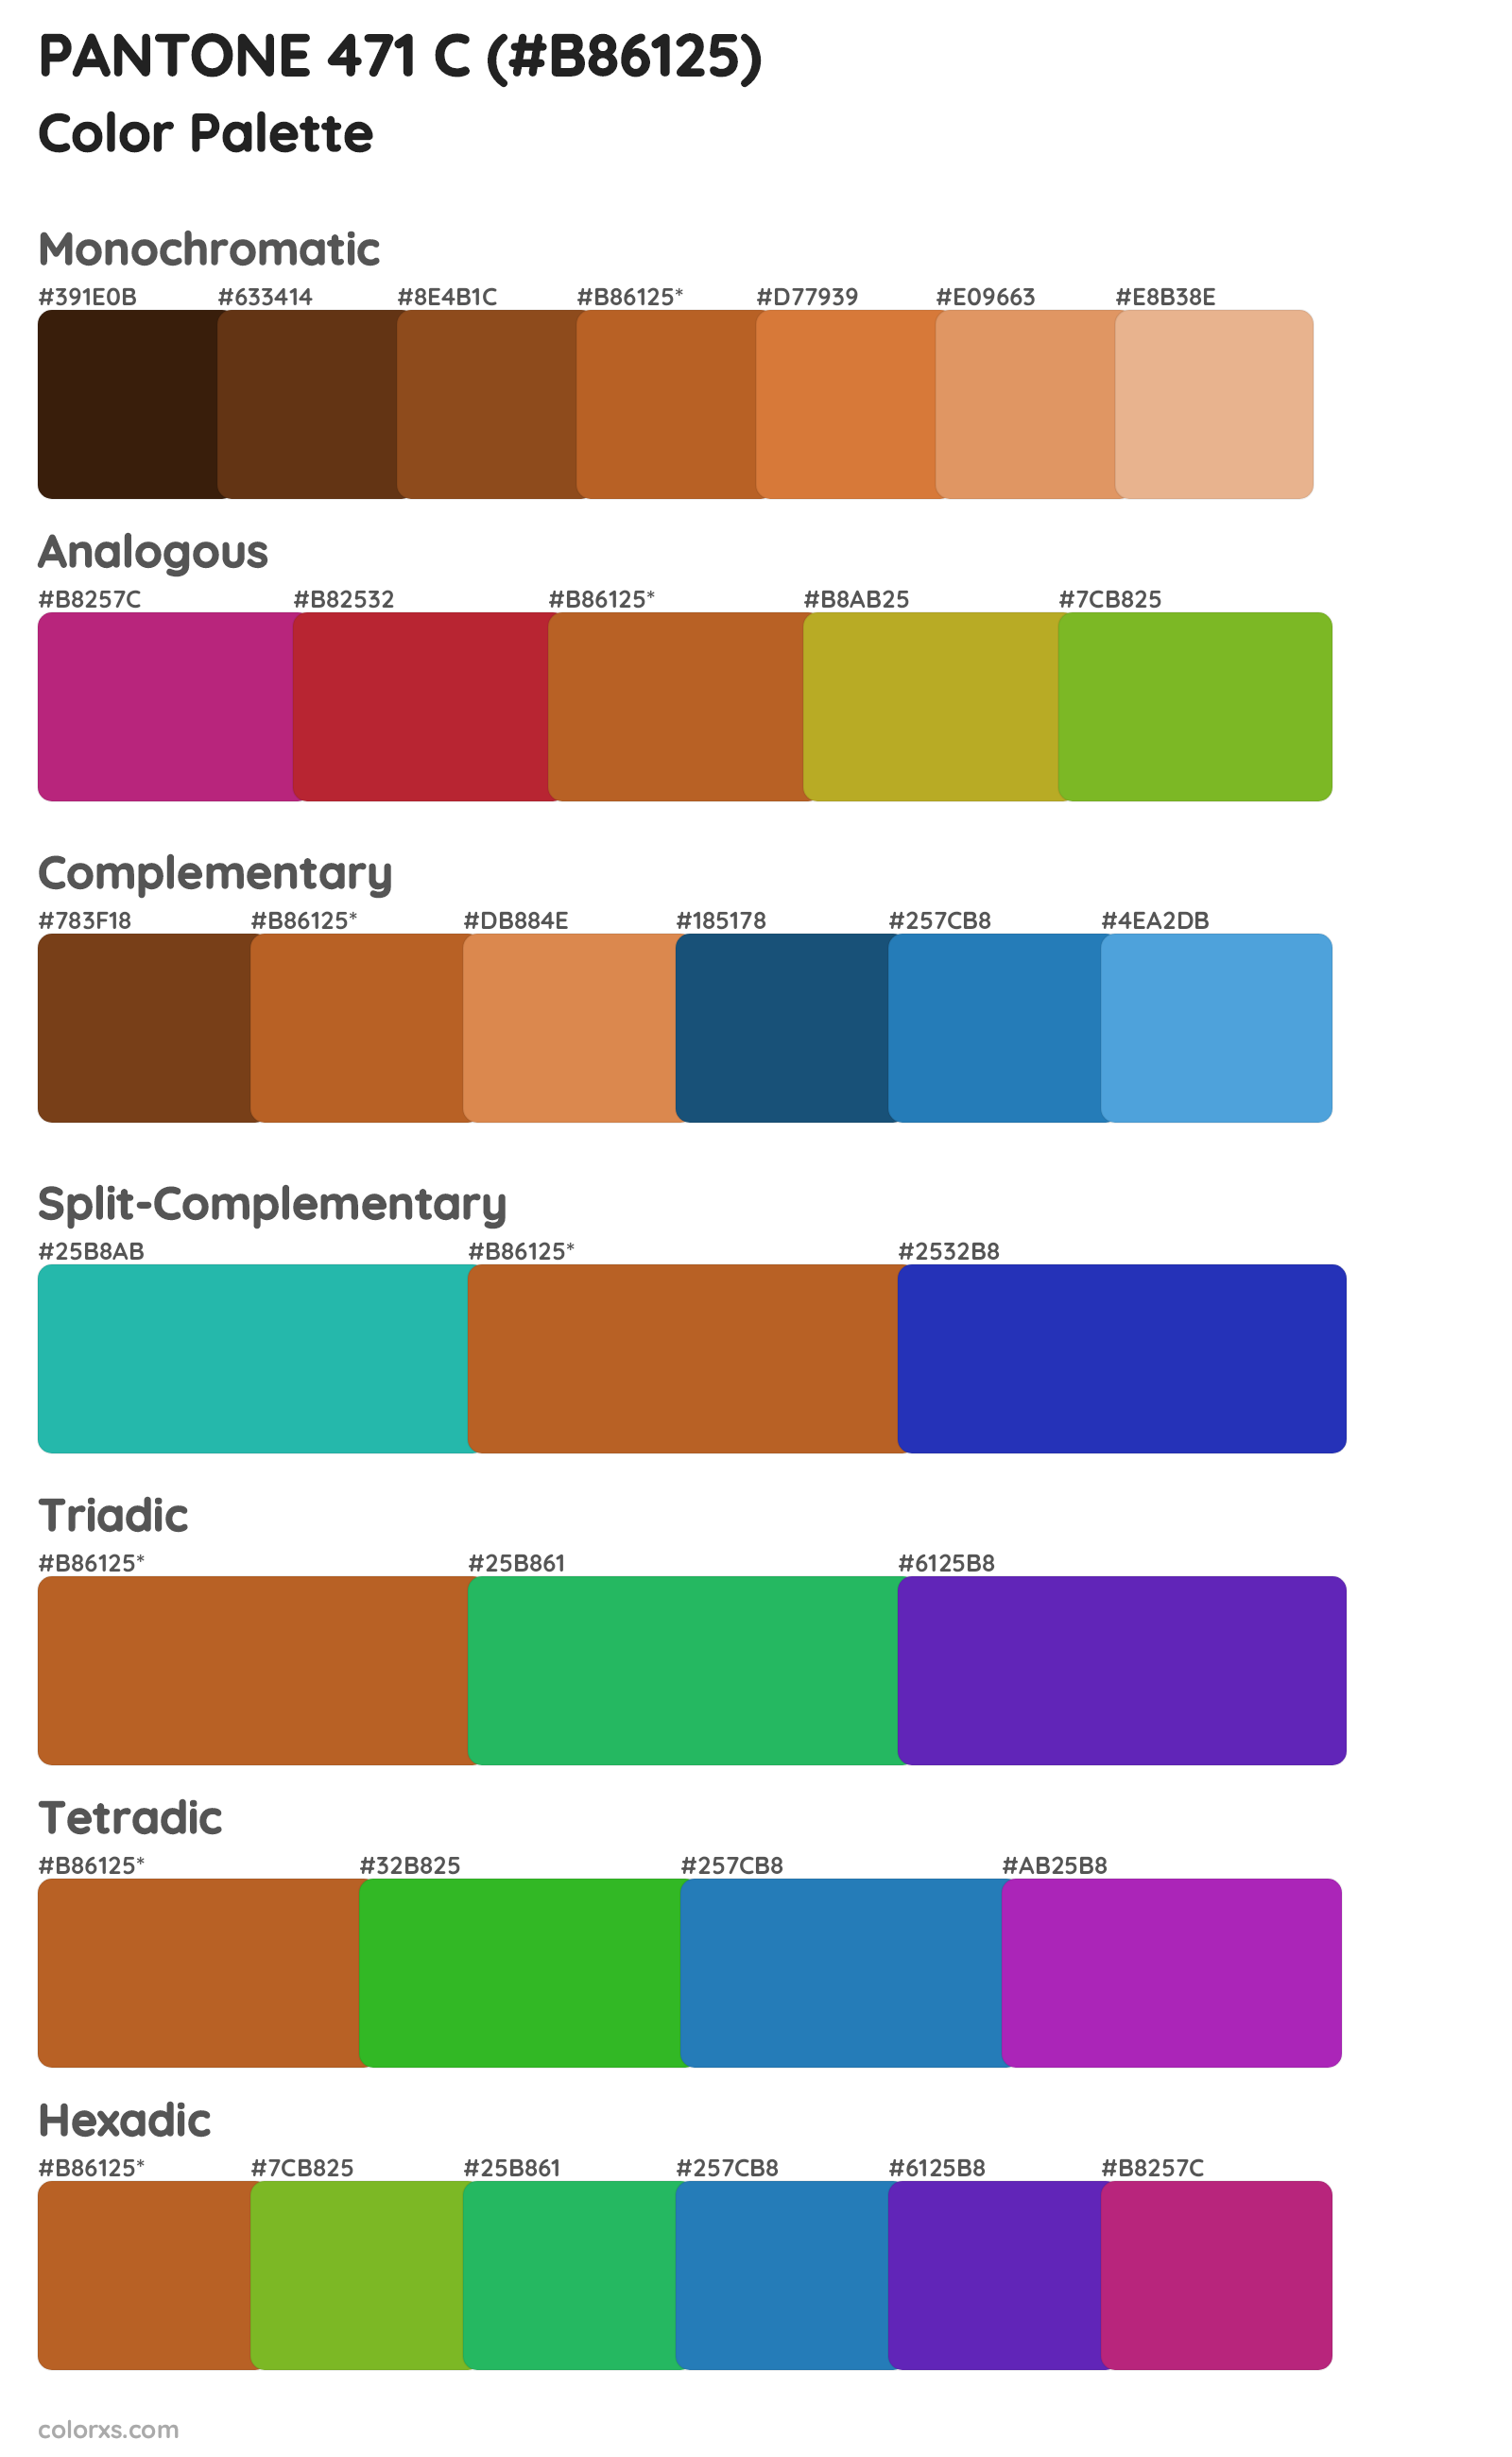 PANTONE 471 C Color Scheme Palettes